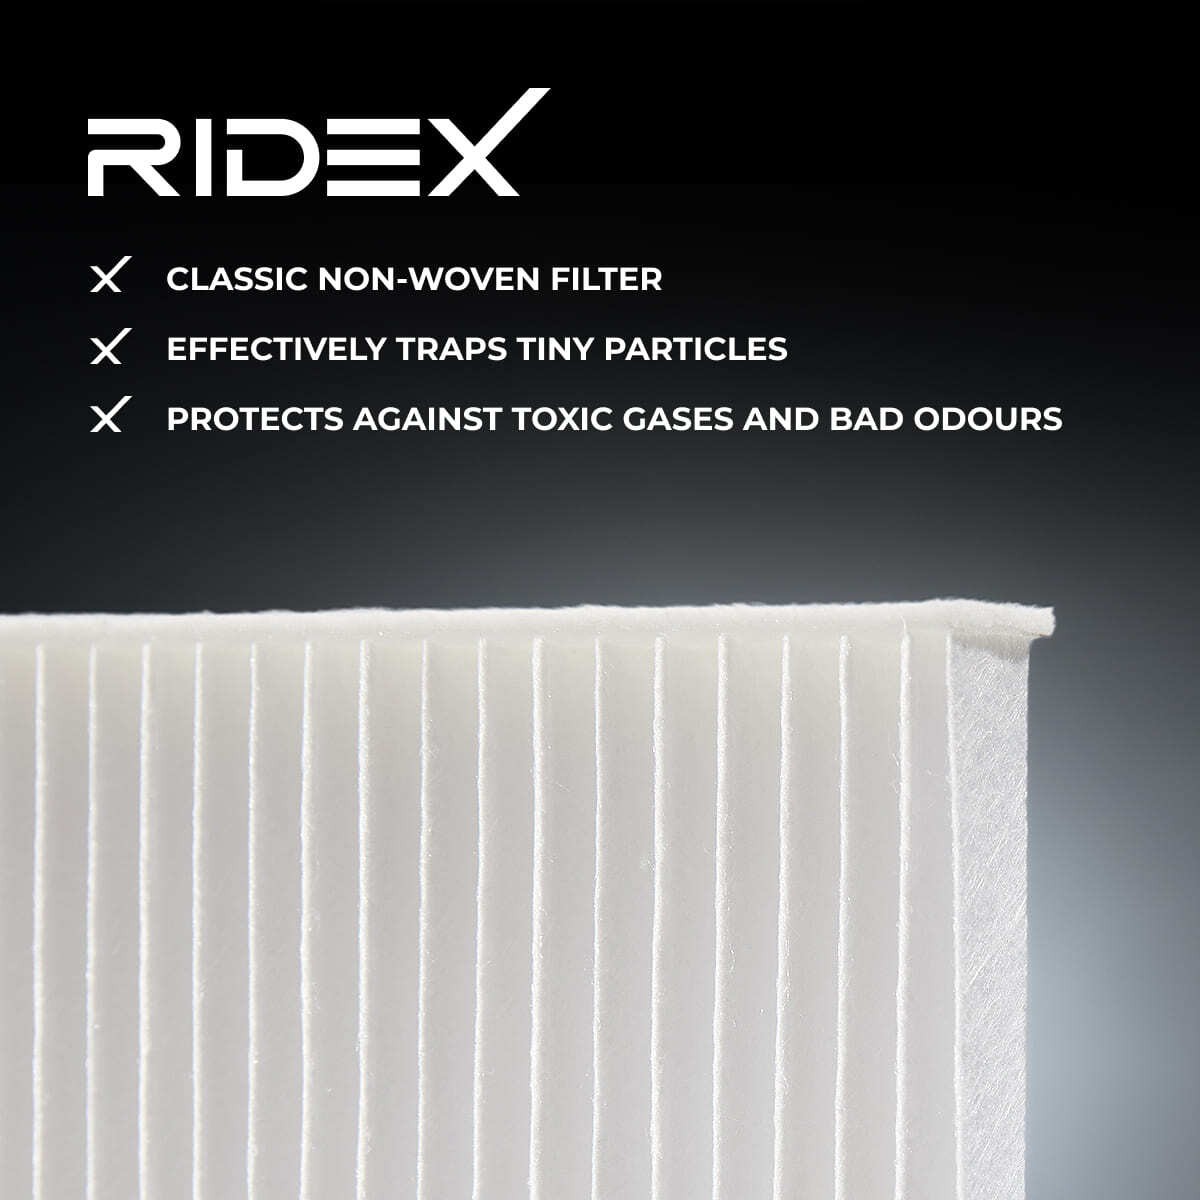 RIDEX Filtro antipolen 424I0499 comprar online